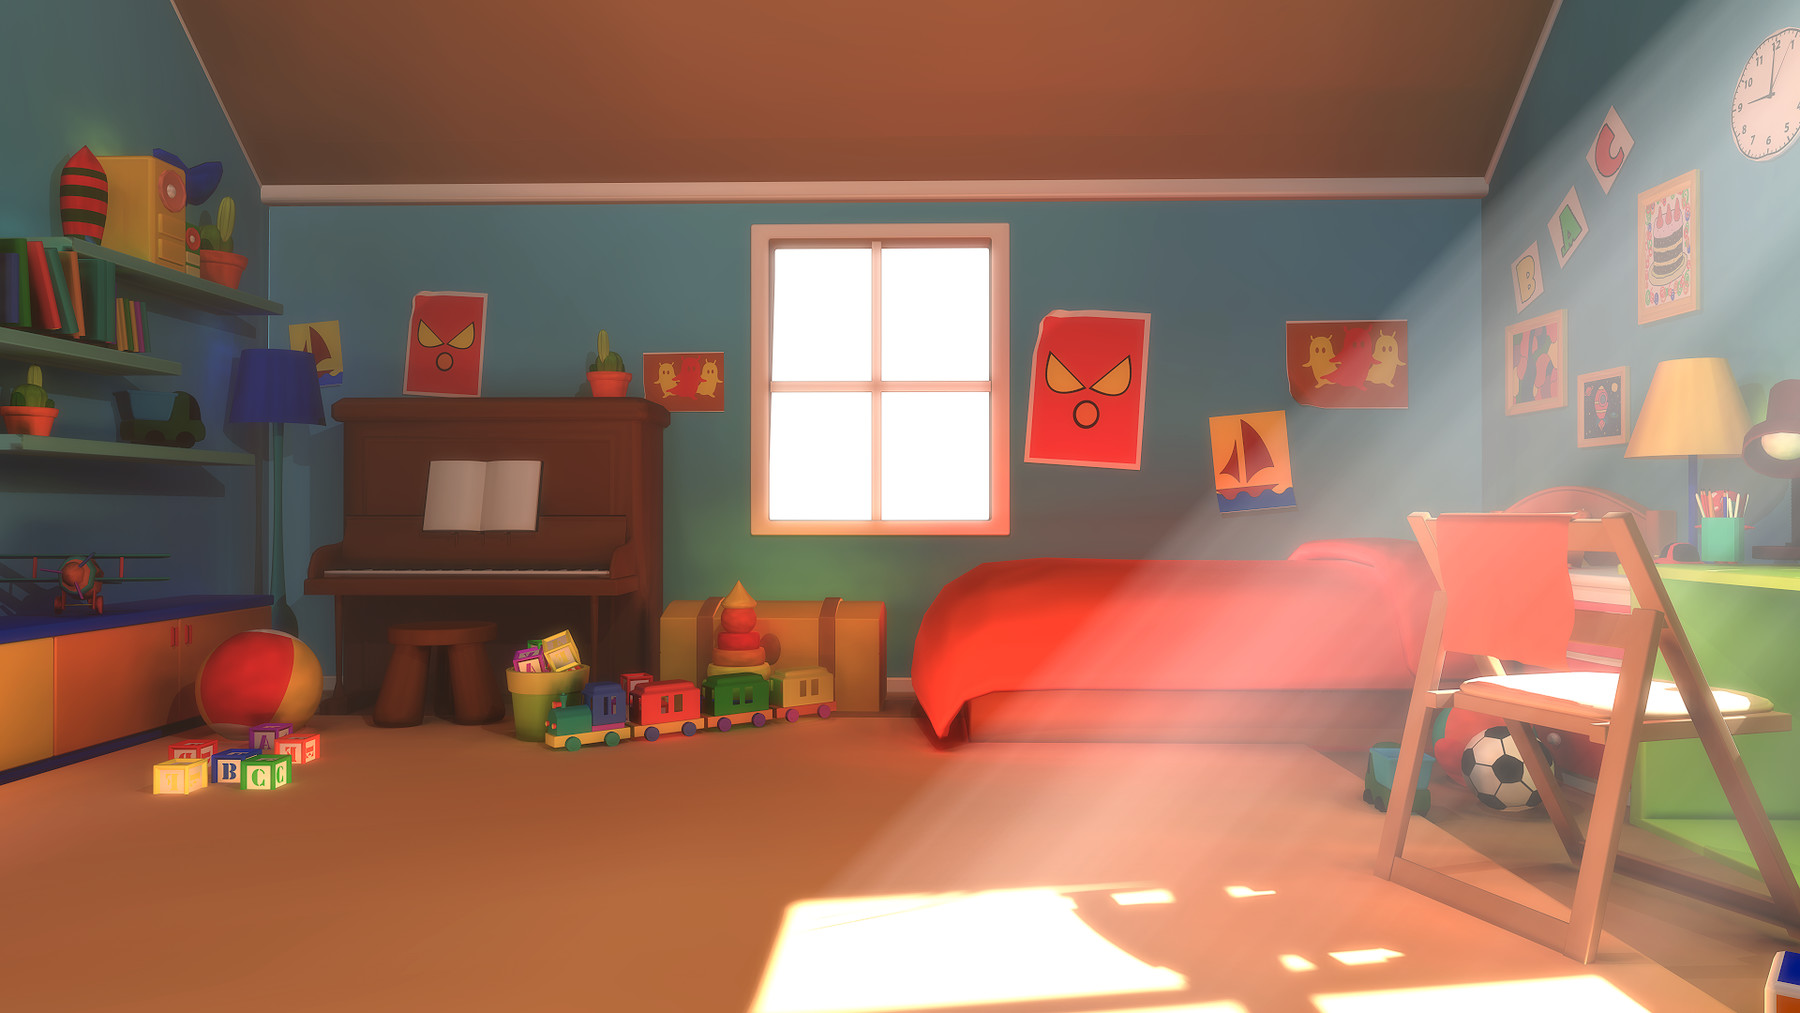 Phòng ngủ đầy màu sắc hoạt hình: Bạn muốn tạo cho căn phòng ngủ của mình cảm giác vui tươi, trẻ trung và đầy màu sắc? Hãy cùng khám phá những phòng ngủ đầy màu sắc hoạt hình sẽ đem lại cho bạn những trải nghiệm thật thú vị và mới lạ.